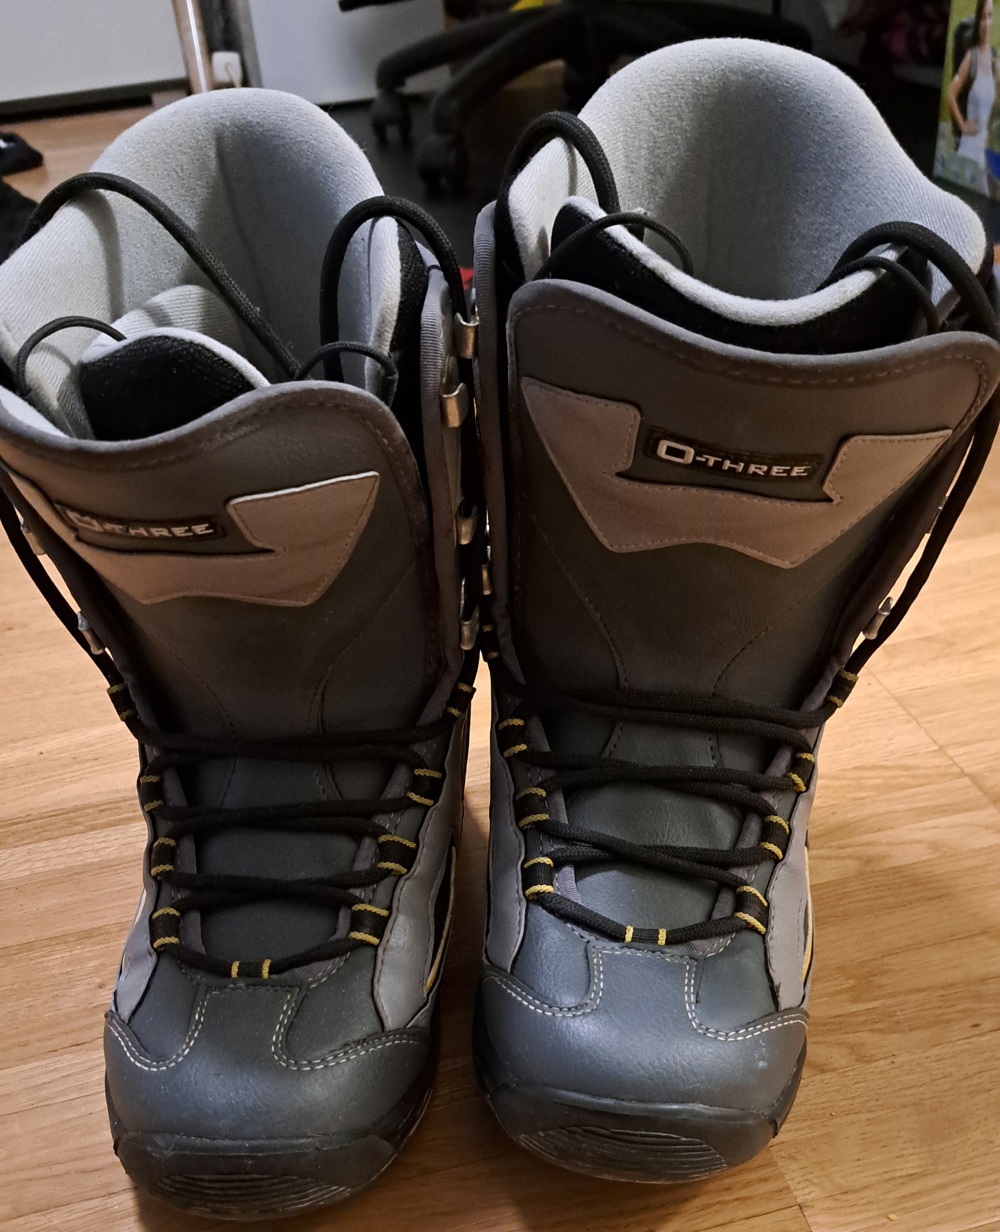 Snowboard Boots Größe 38